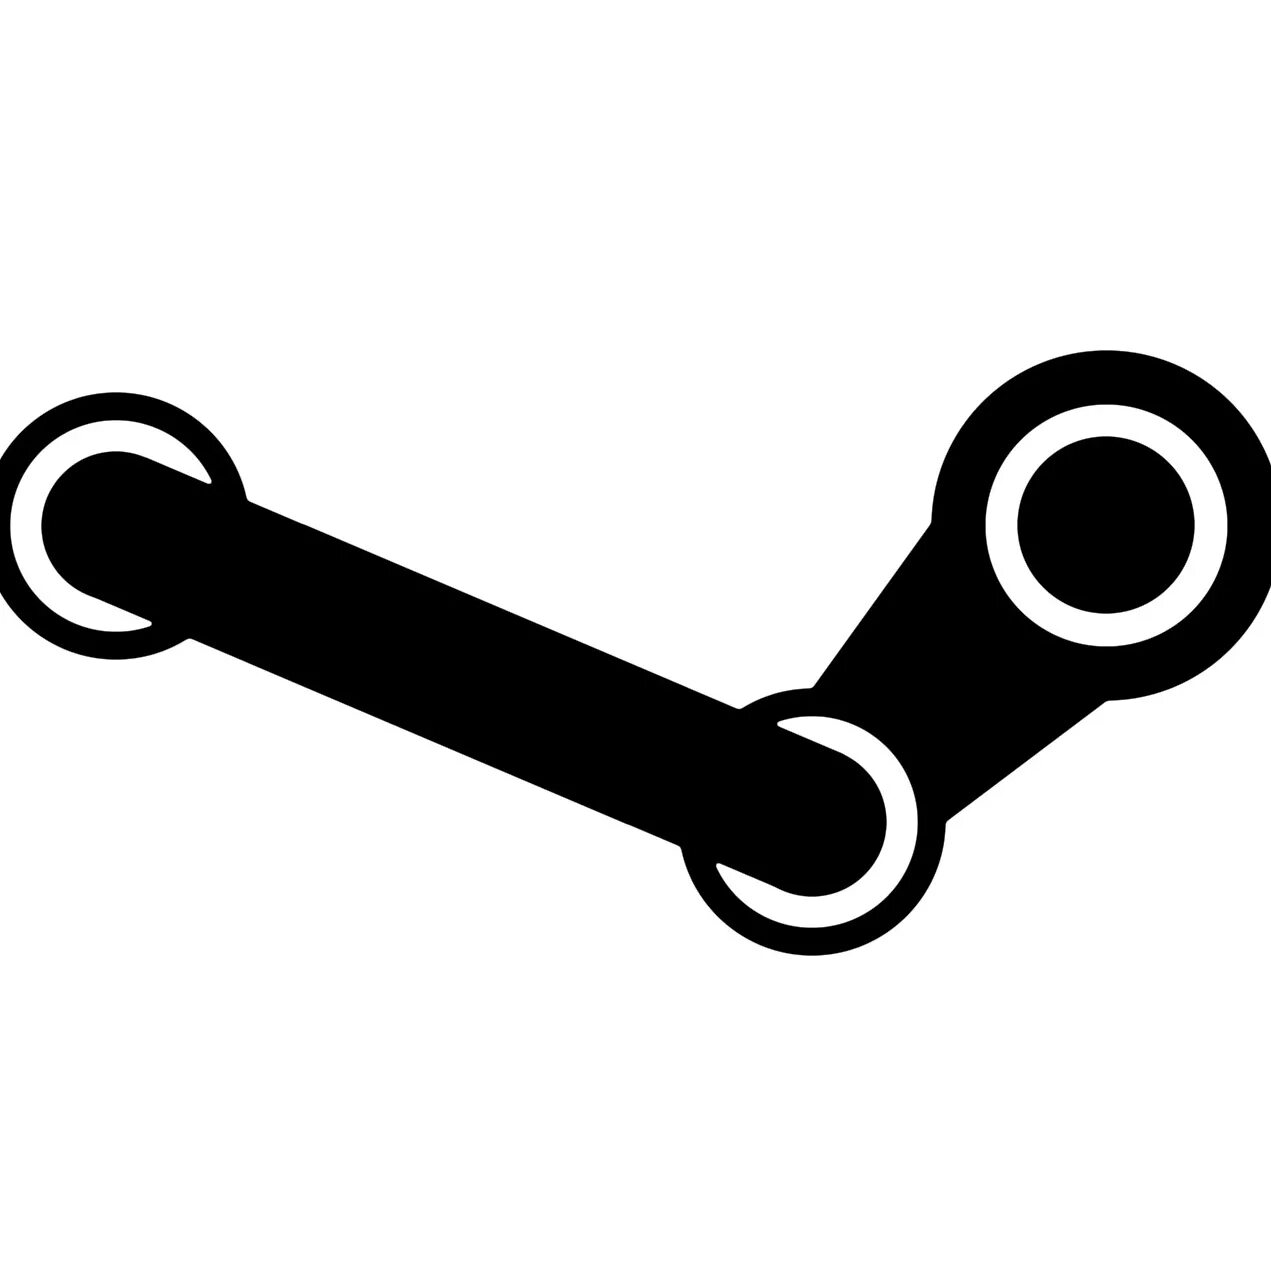 Значок стима. Лого Steam PNG. Steam иконка без фона. Valve Steam.